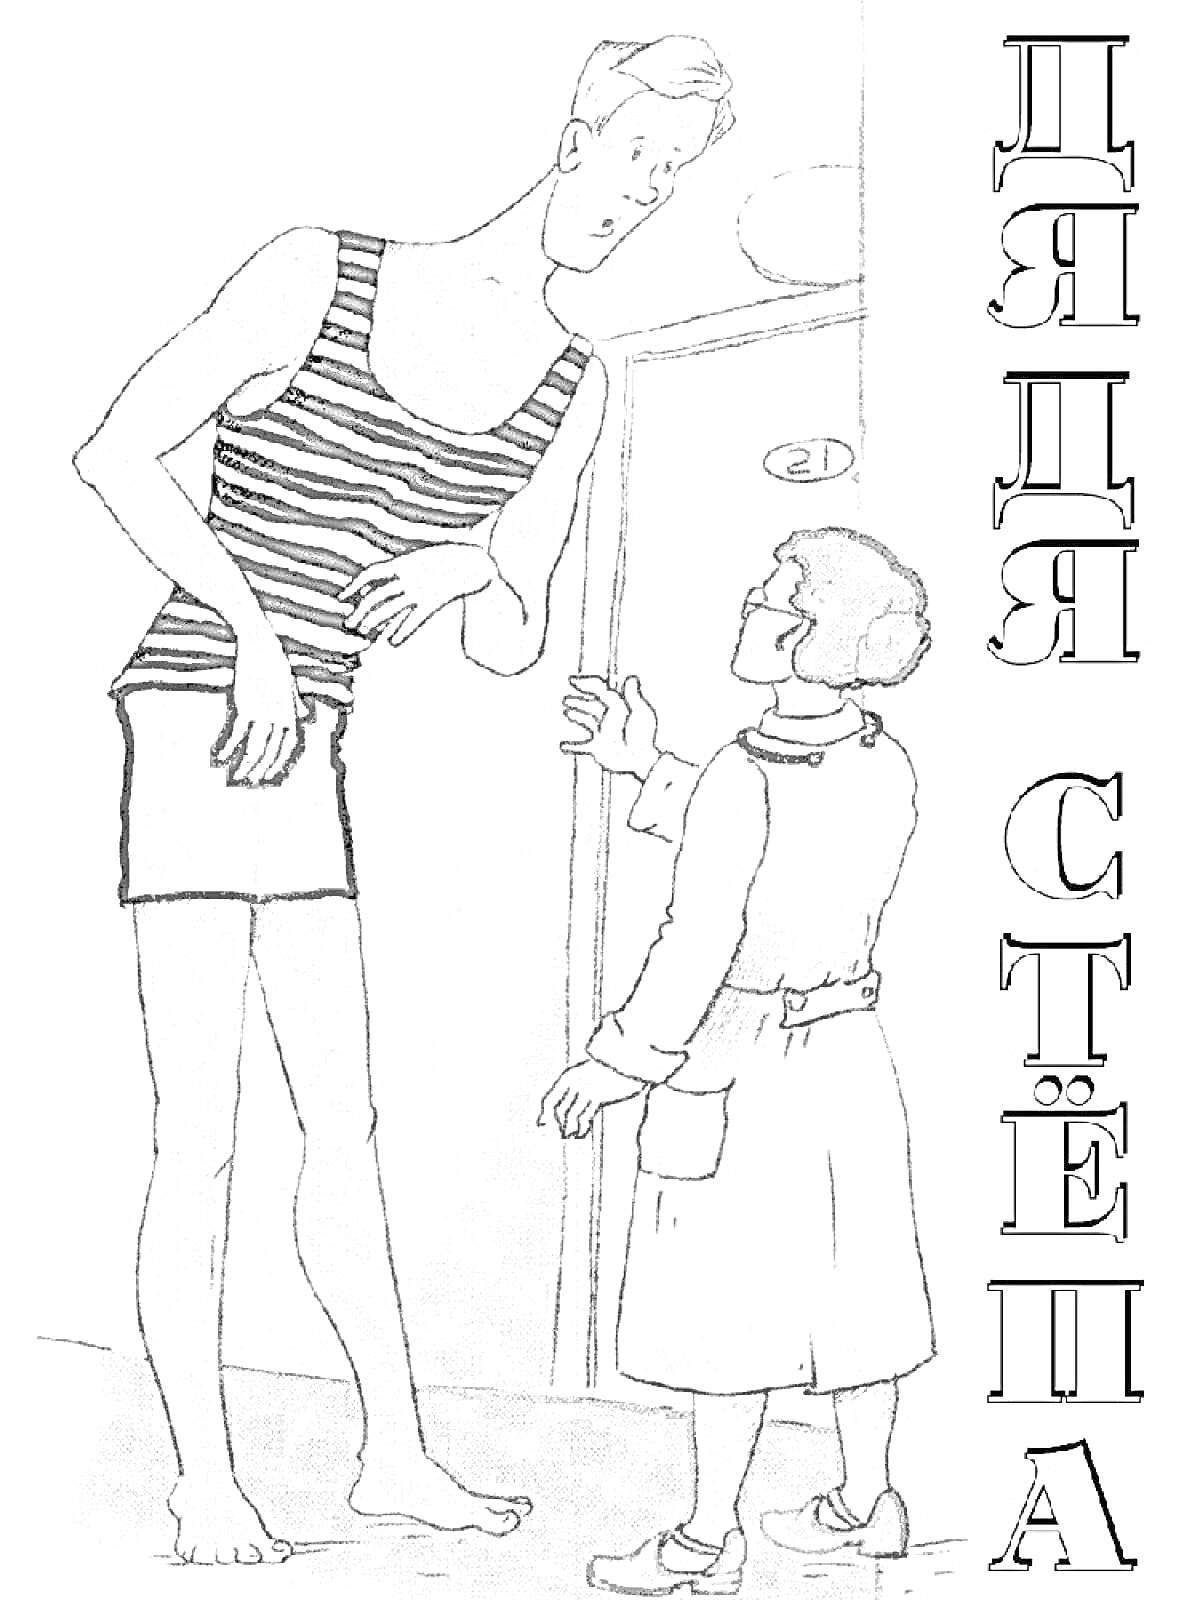 Раскраска Дядя Степа и женщина рядом с дверью; Дядя Степа стоит в полосатой майке и шортах, женщина в халате и очках, они разговаривают.